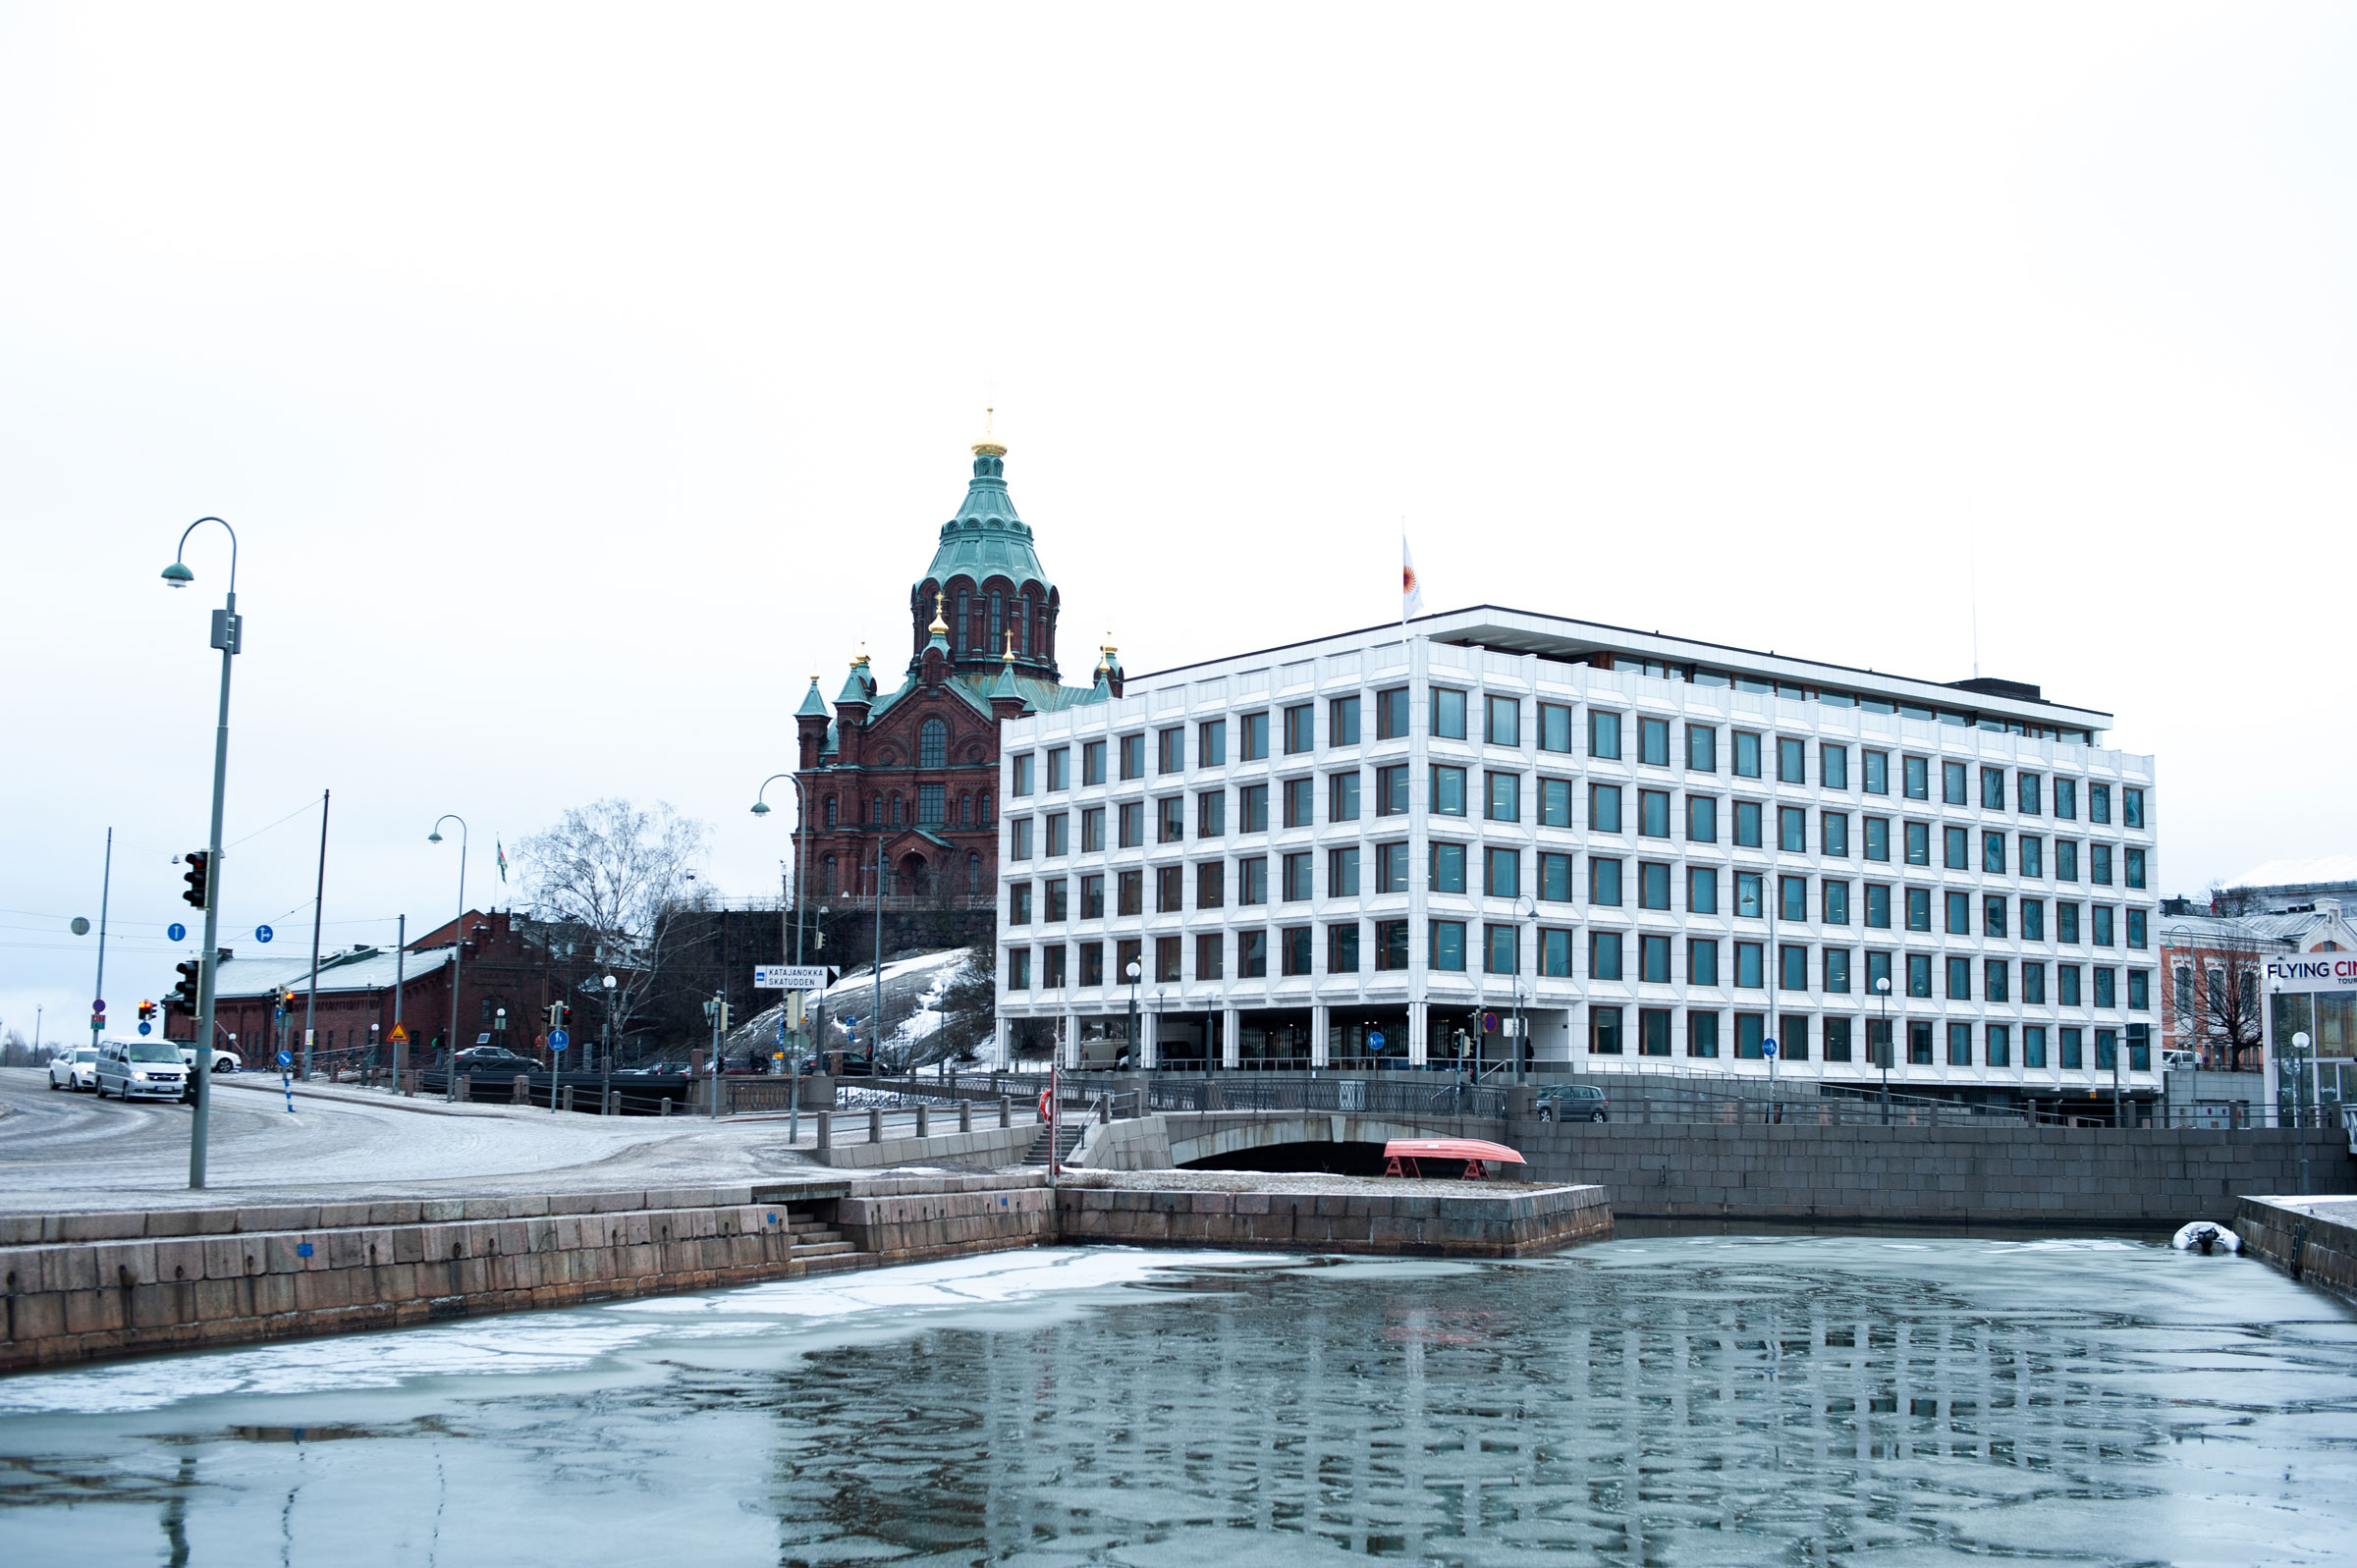 The port scene in Helsinki 